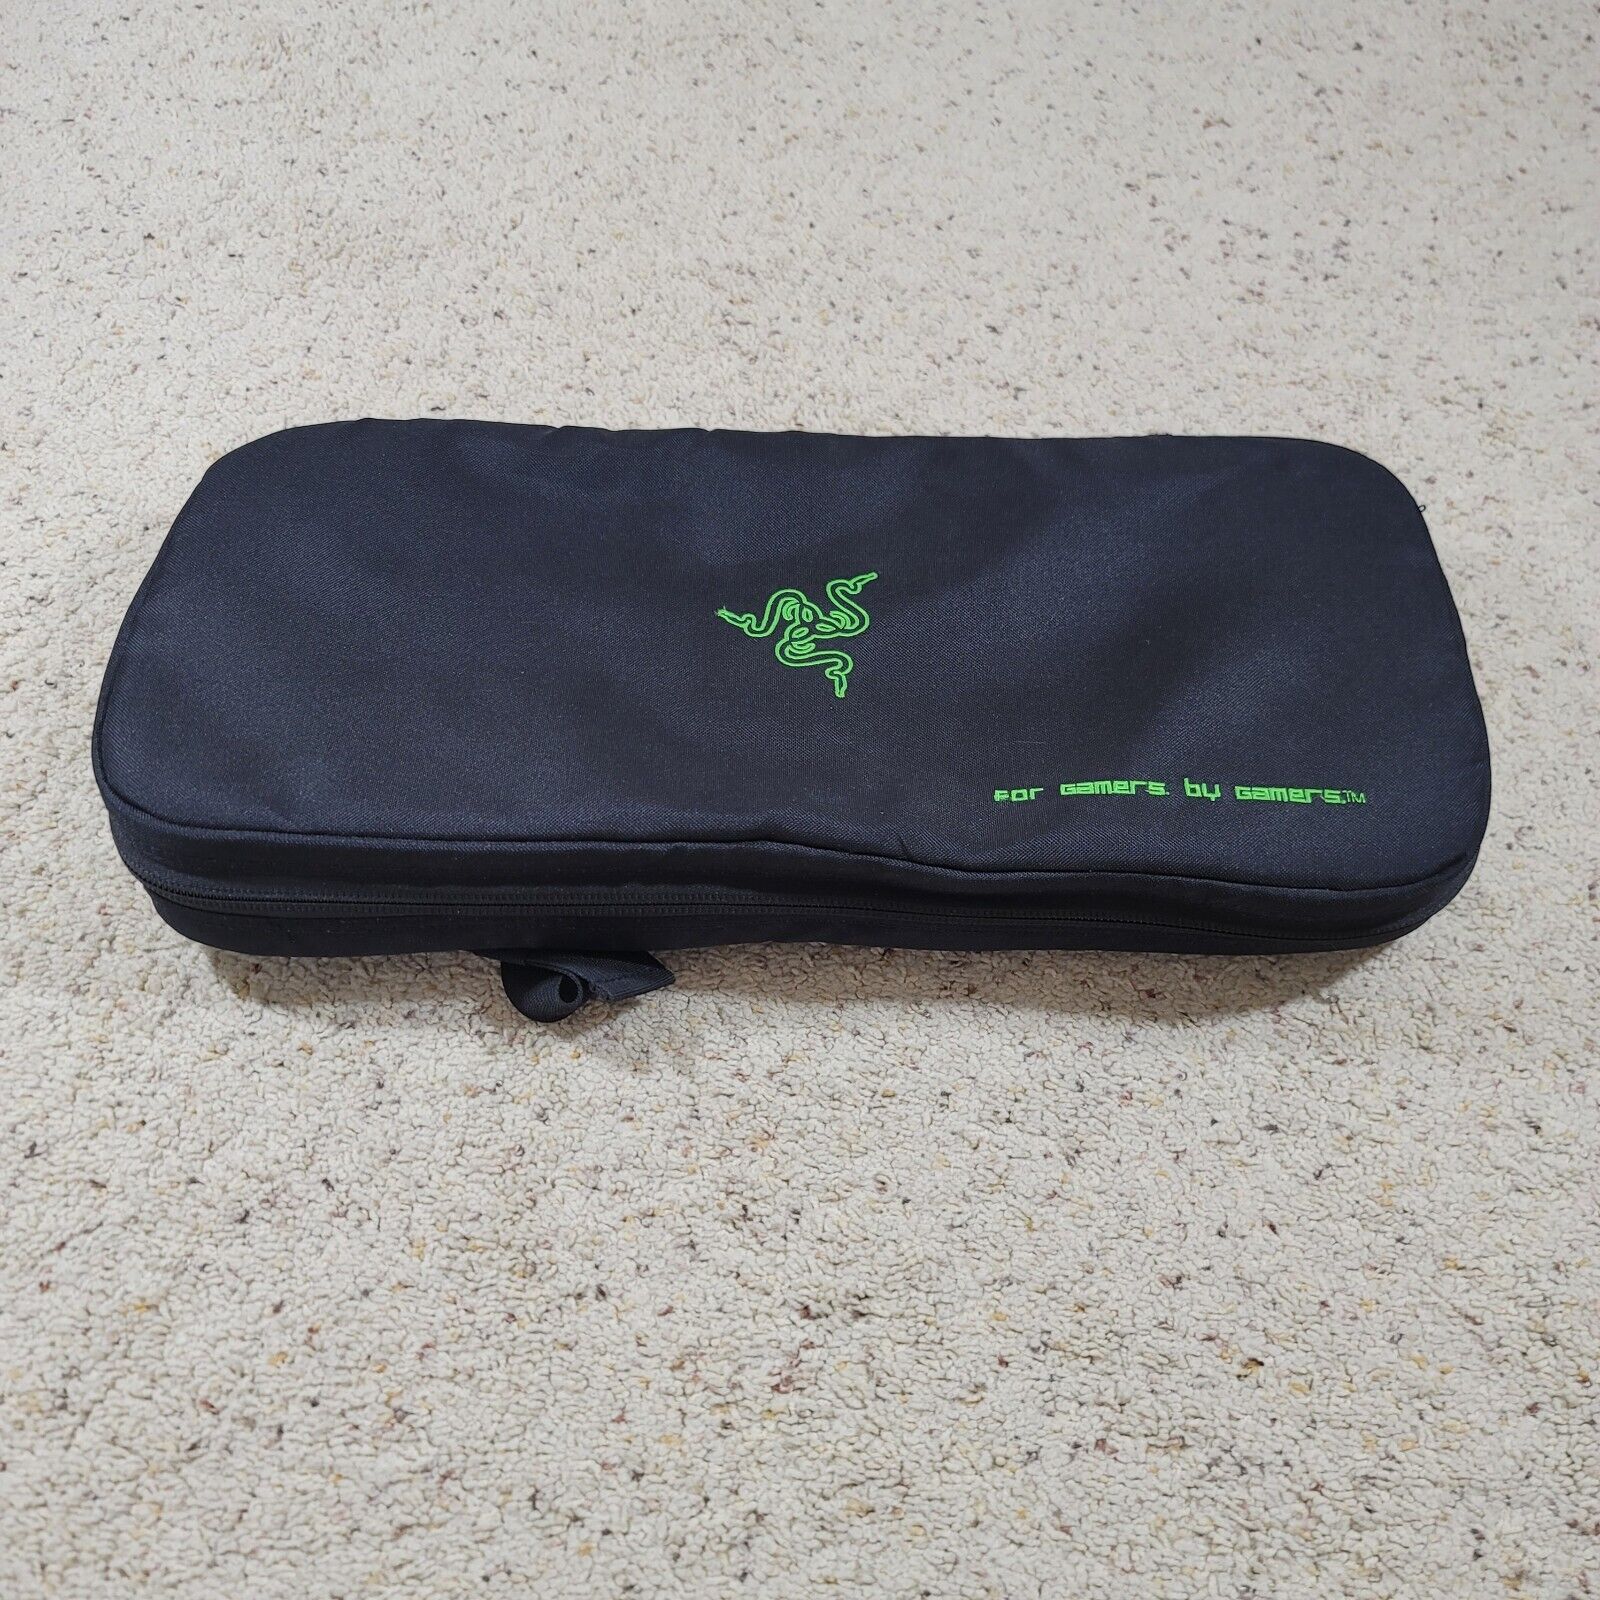 Razer Keyboard Case Bag for Razer Gaming Keyboards With Shoulder Strap Black